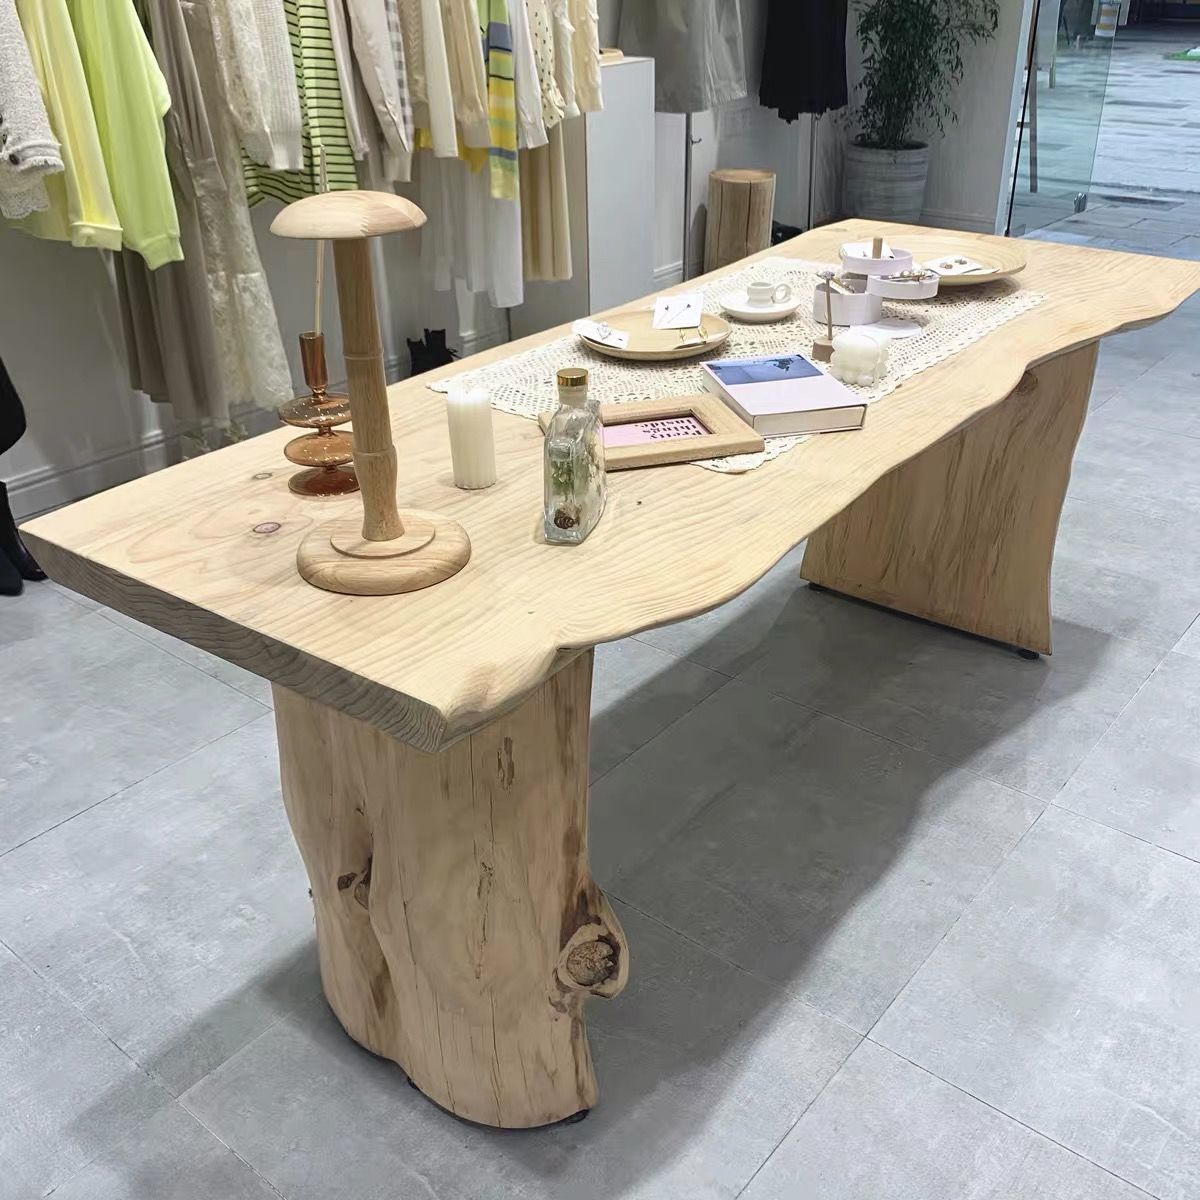 新款北欧原木桌子服装店饰品鞋包摆放中岛流水台展示长桌实木大板